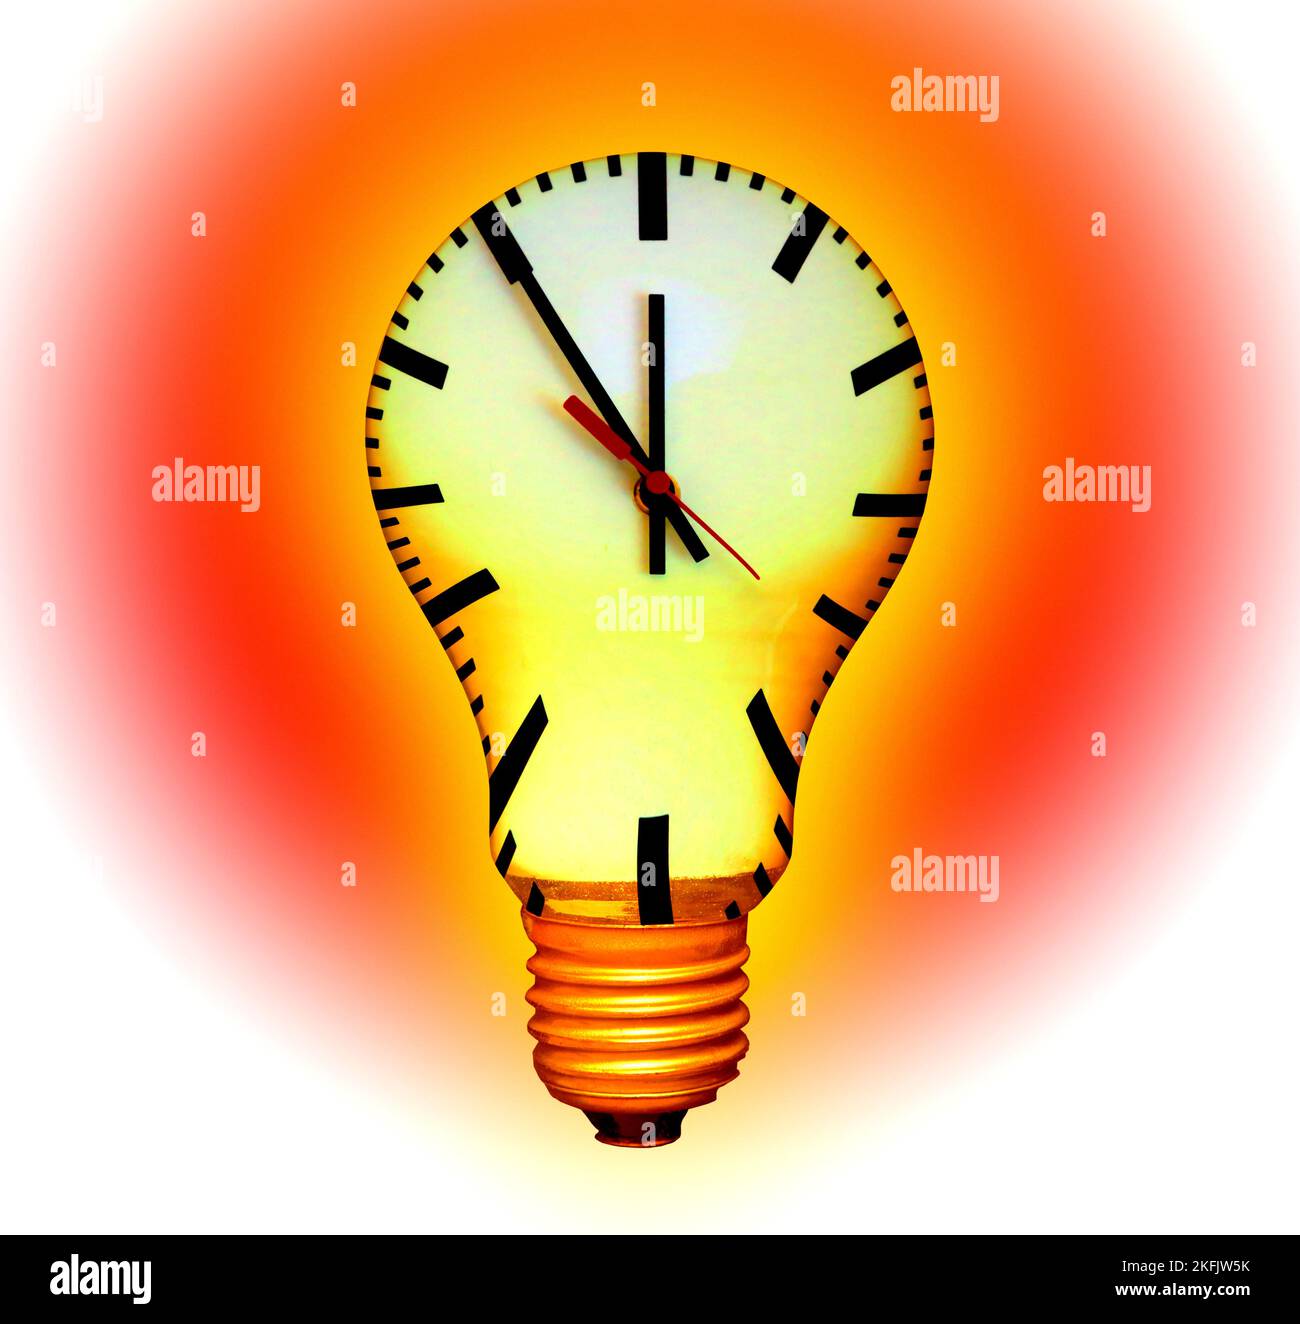 Tiempo limitado utilizando combustibles fósiles, imagen conceptual Foto de stock